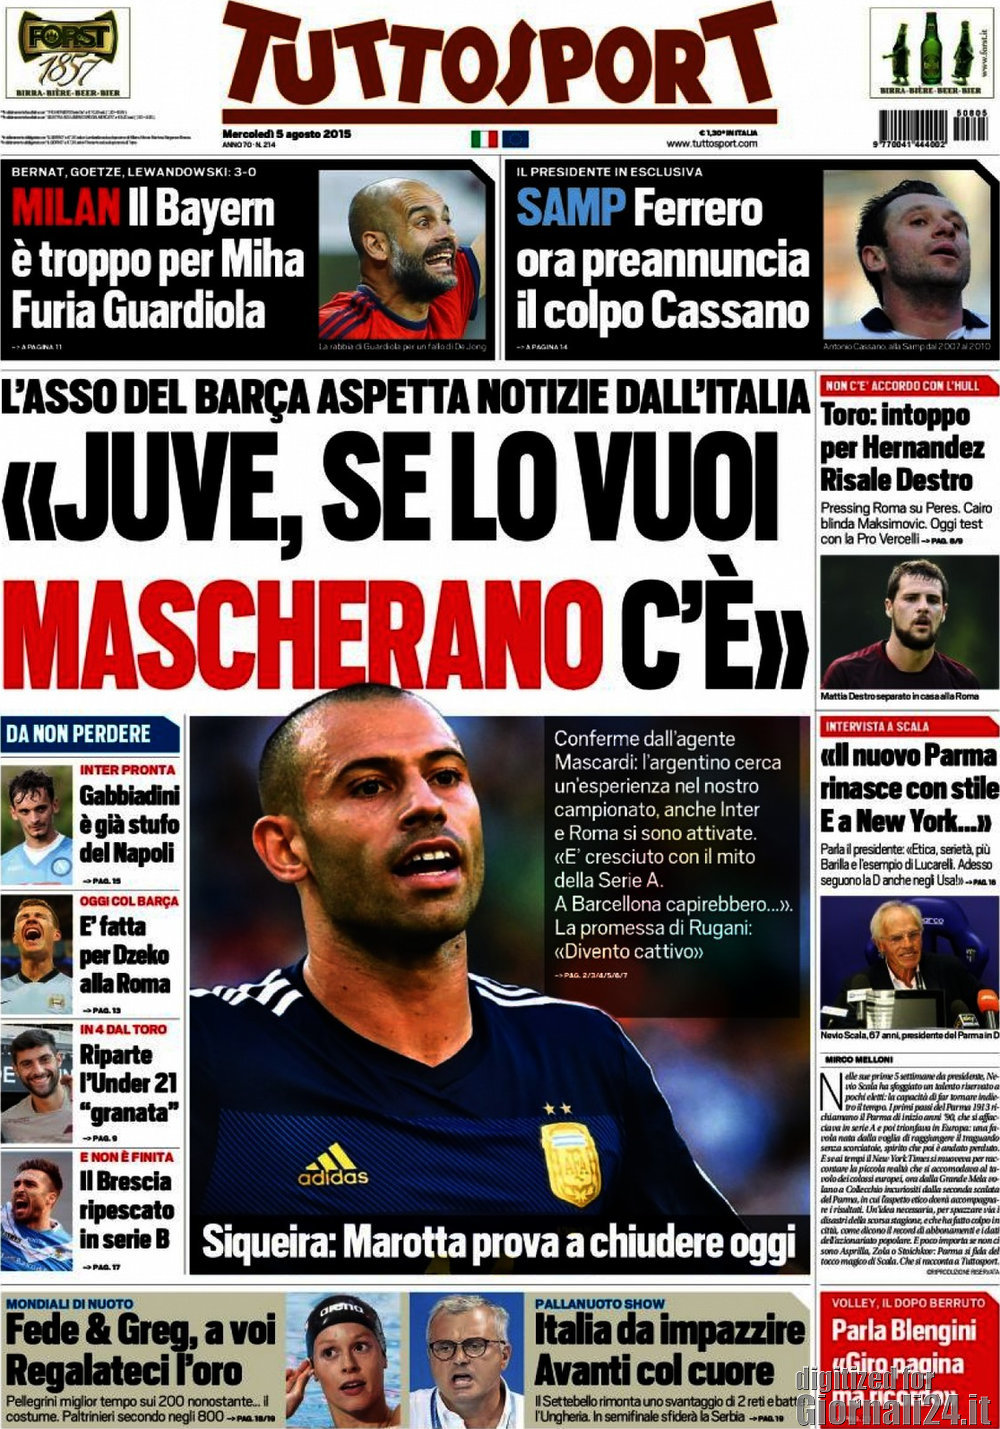 Rassegna stampa 5 agosto 2015: prime pagine Gazzetta, Corriere e Tuttosport